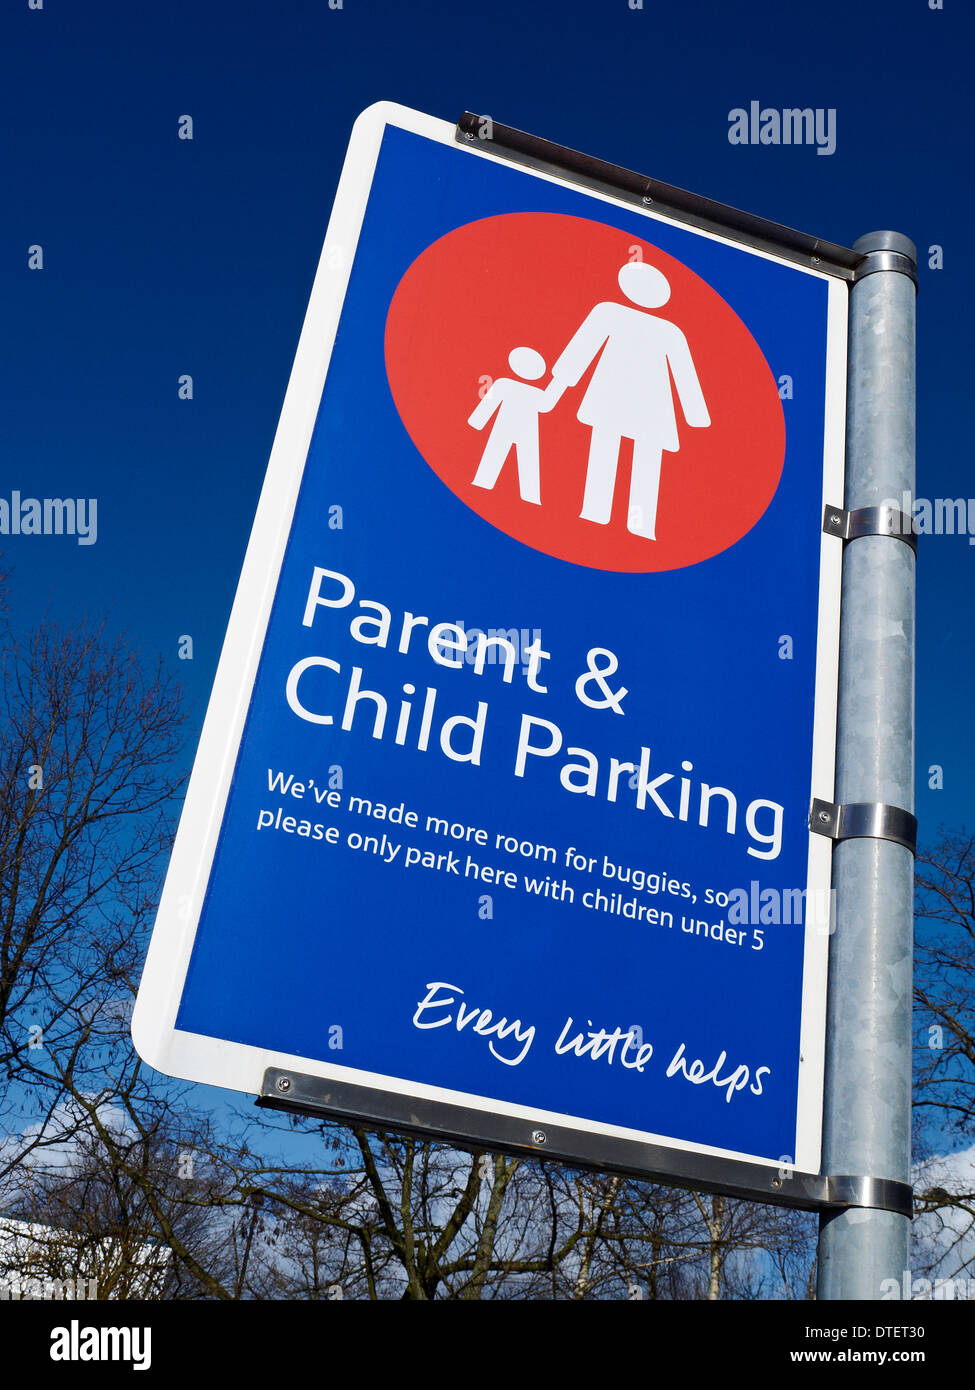 Tesco parent & child parking sign UK Stock Photo